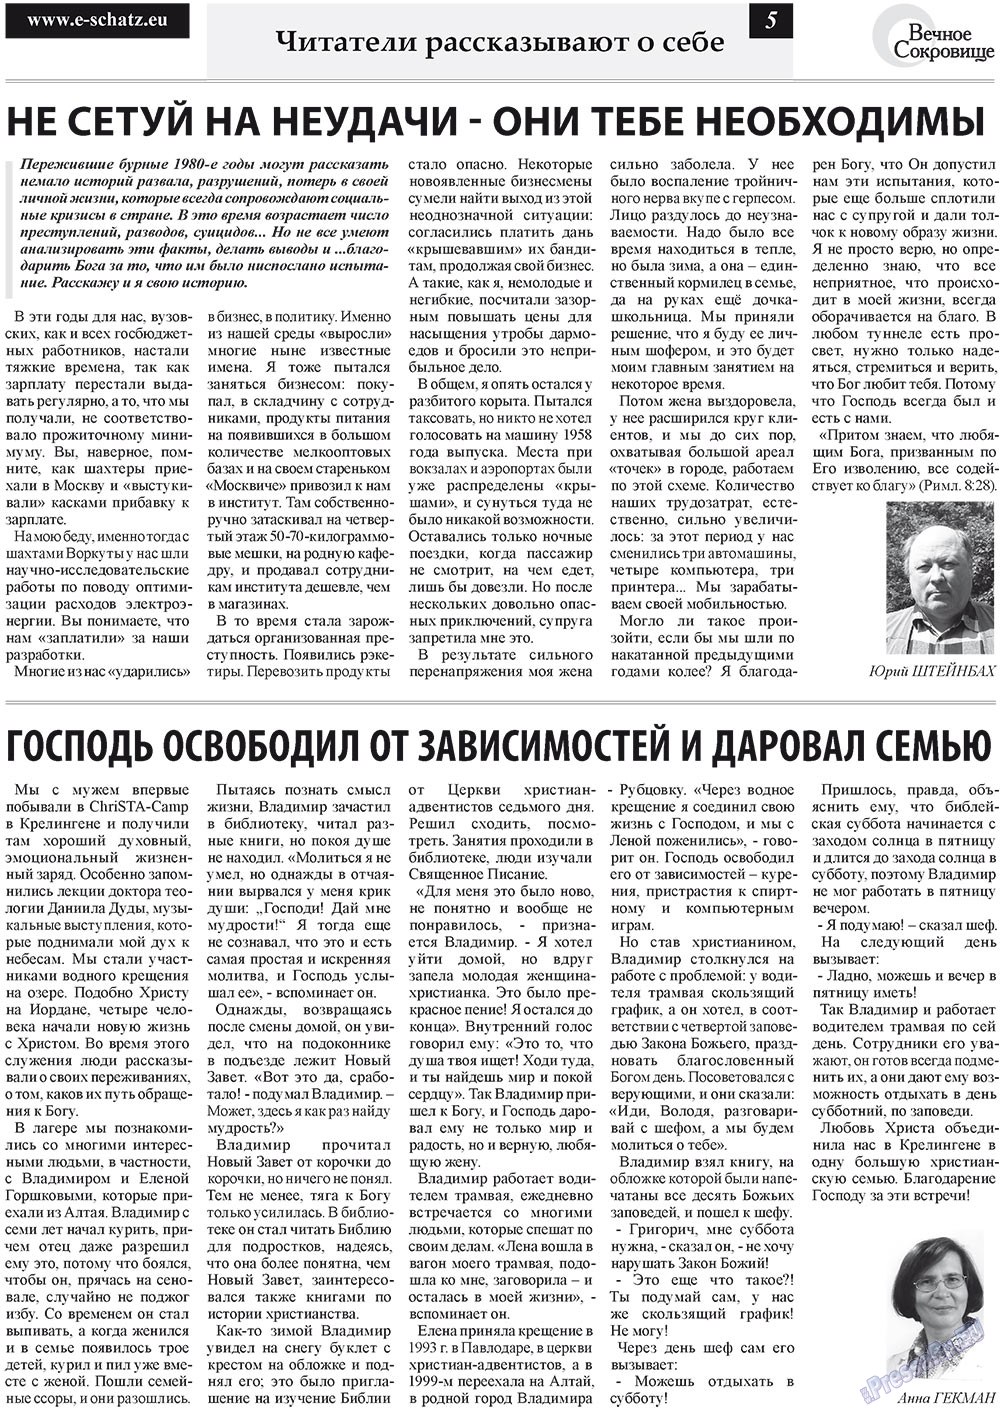 Вечное сокровище, газета. 2011 №4 стр.5